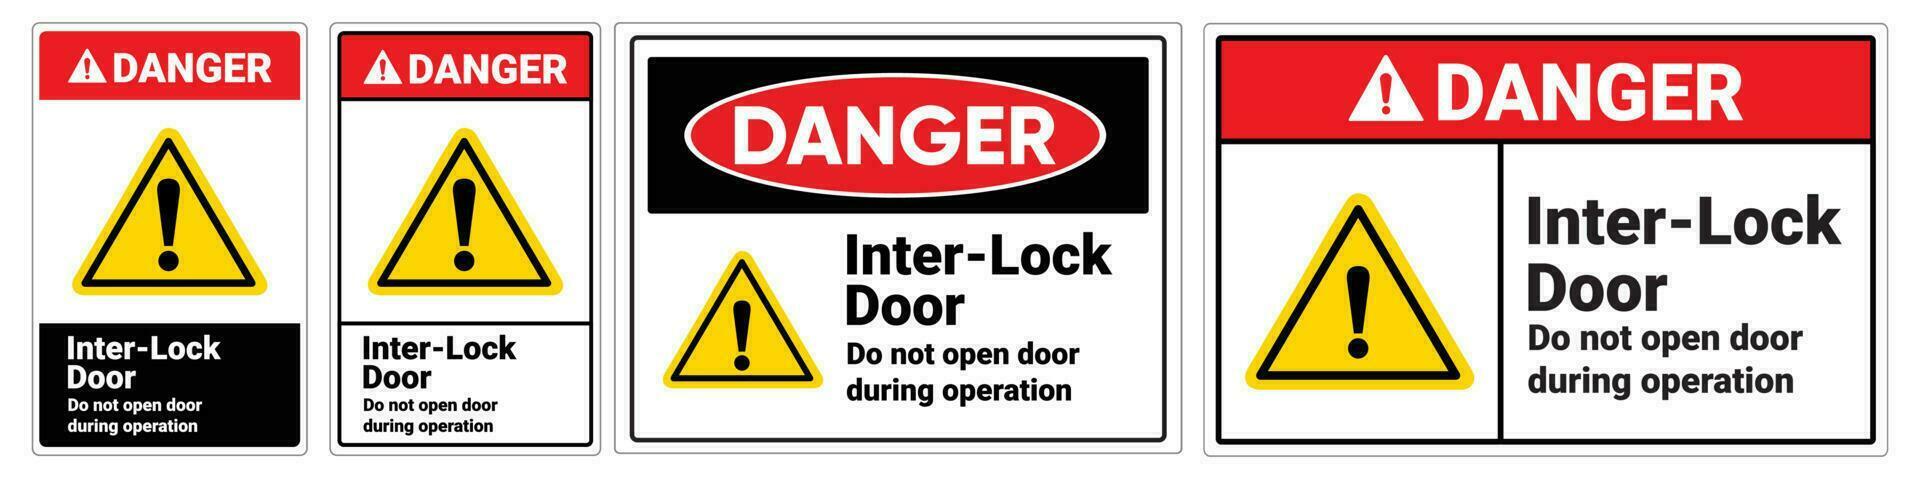 Safety sign Inter lock door do not open door during operation vector